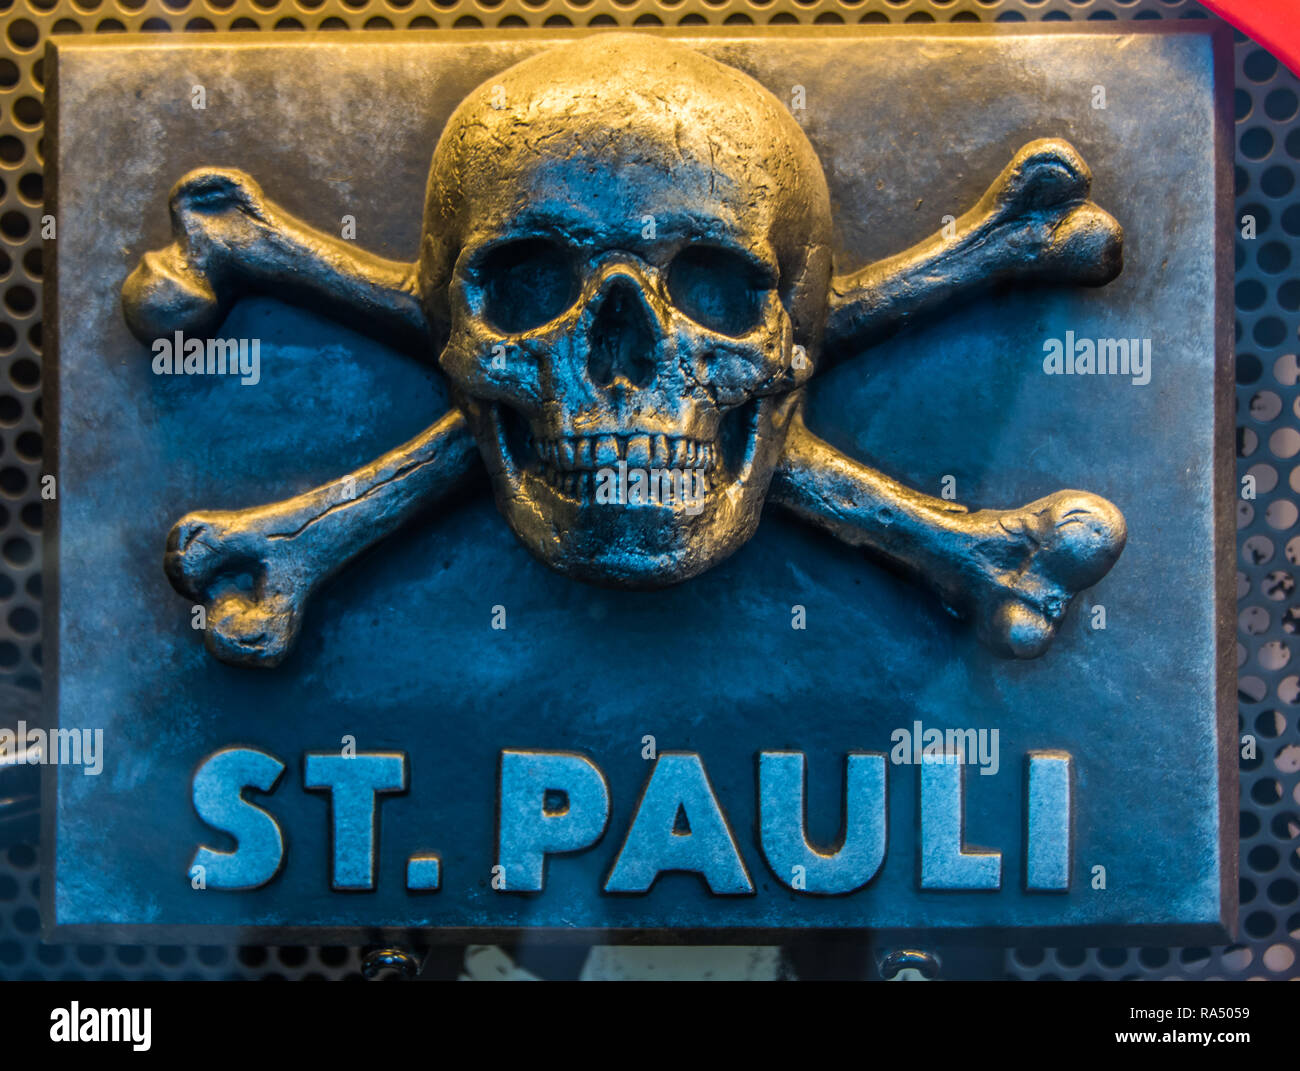 Cráneo y huesos de St Pauli de Hamburgo. Foto de stock